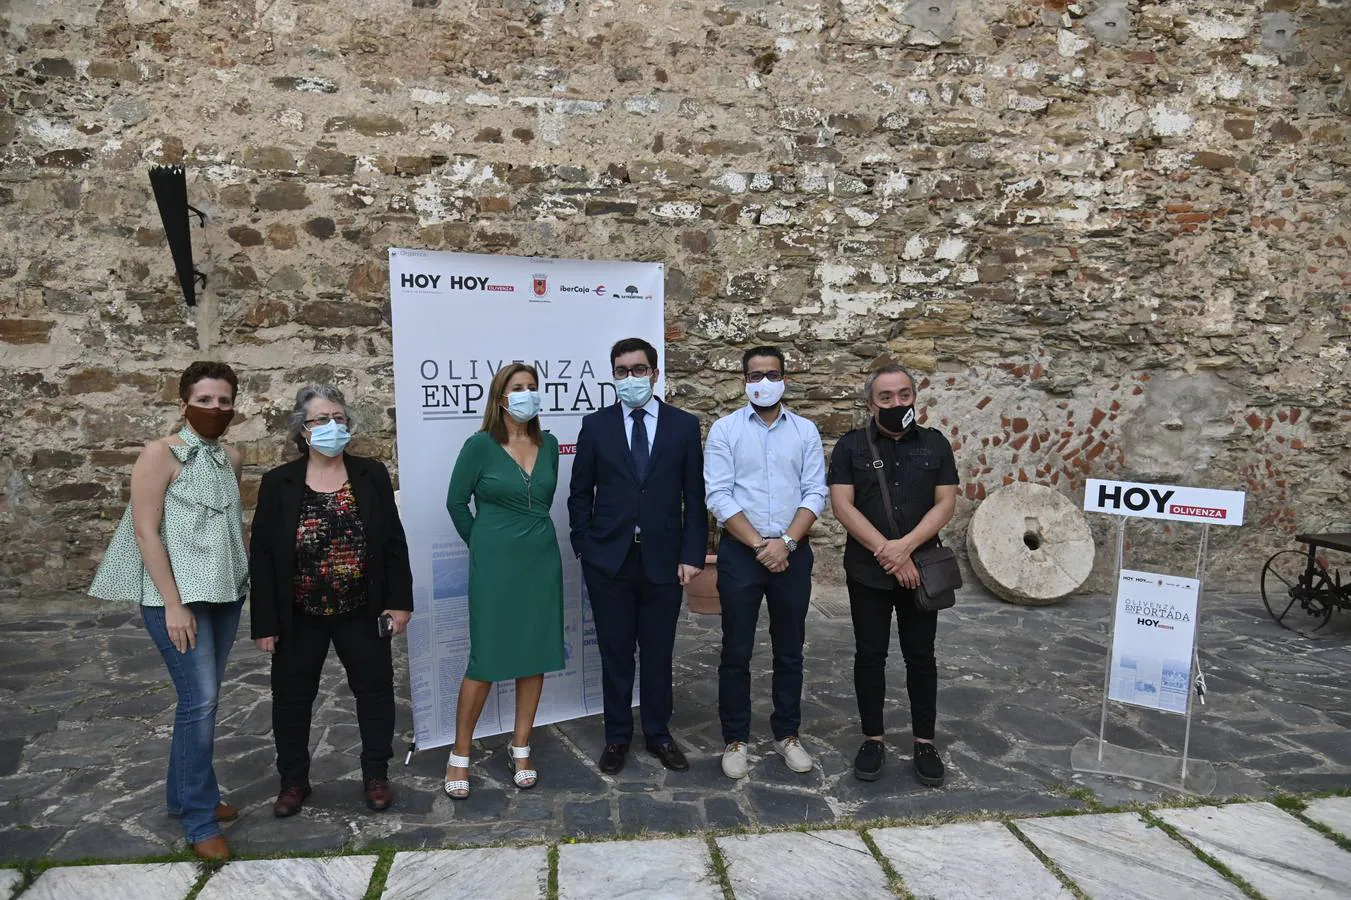 Inaugurada la exposición 'Olivenza en portada', sobre el diario HOY en la ciudad